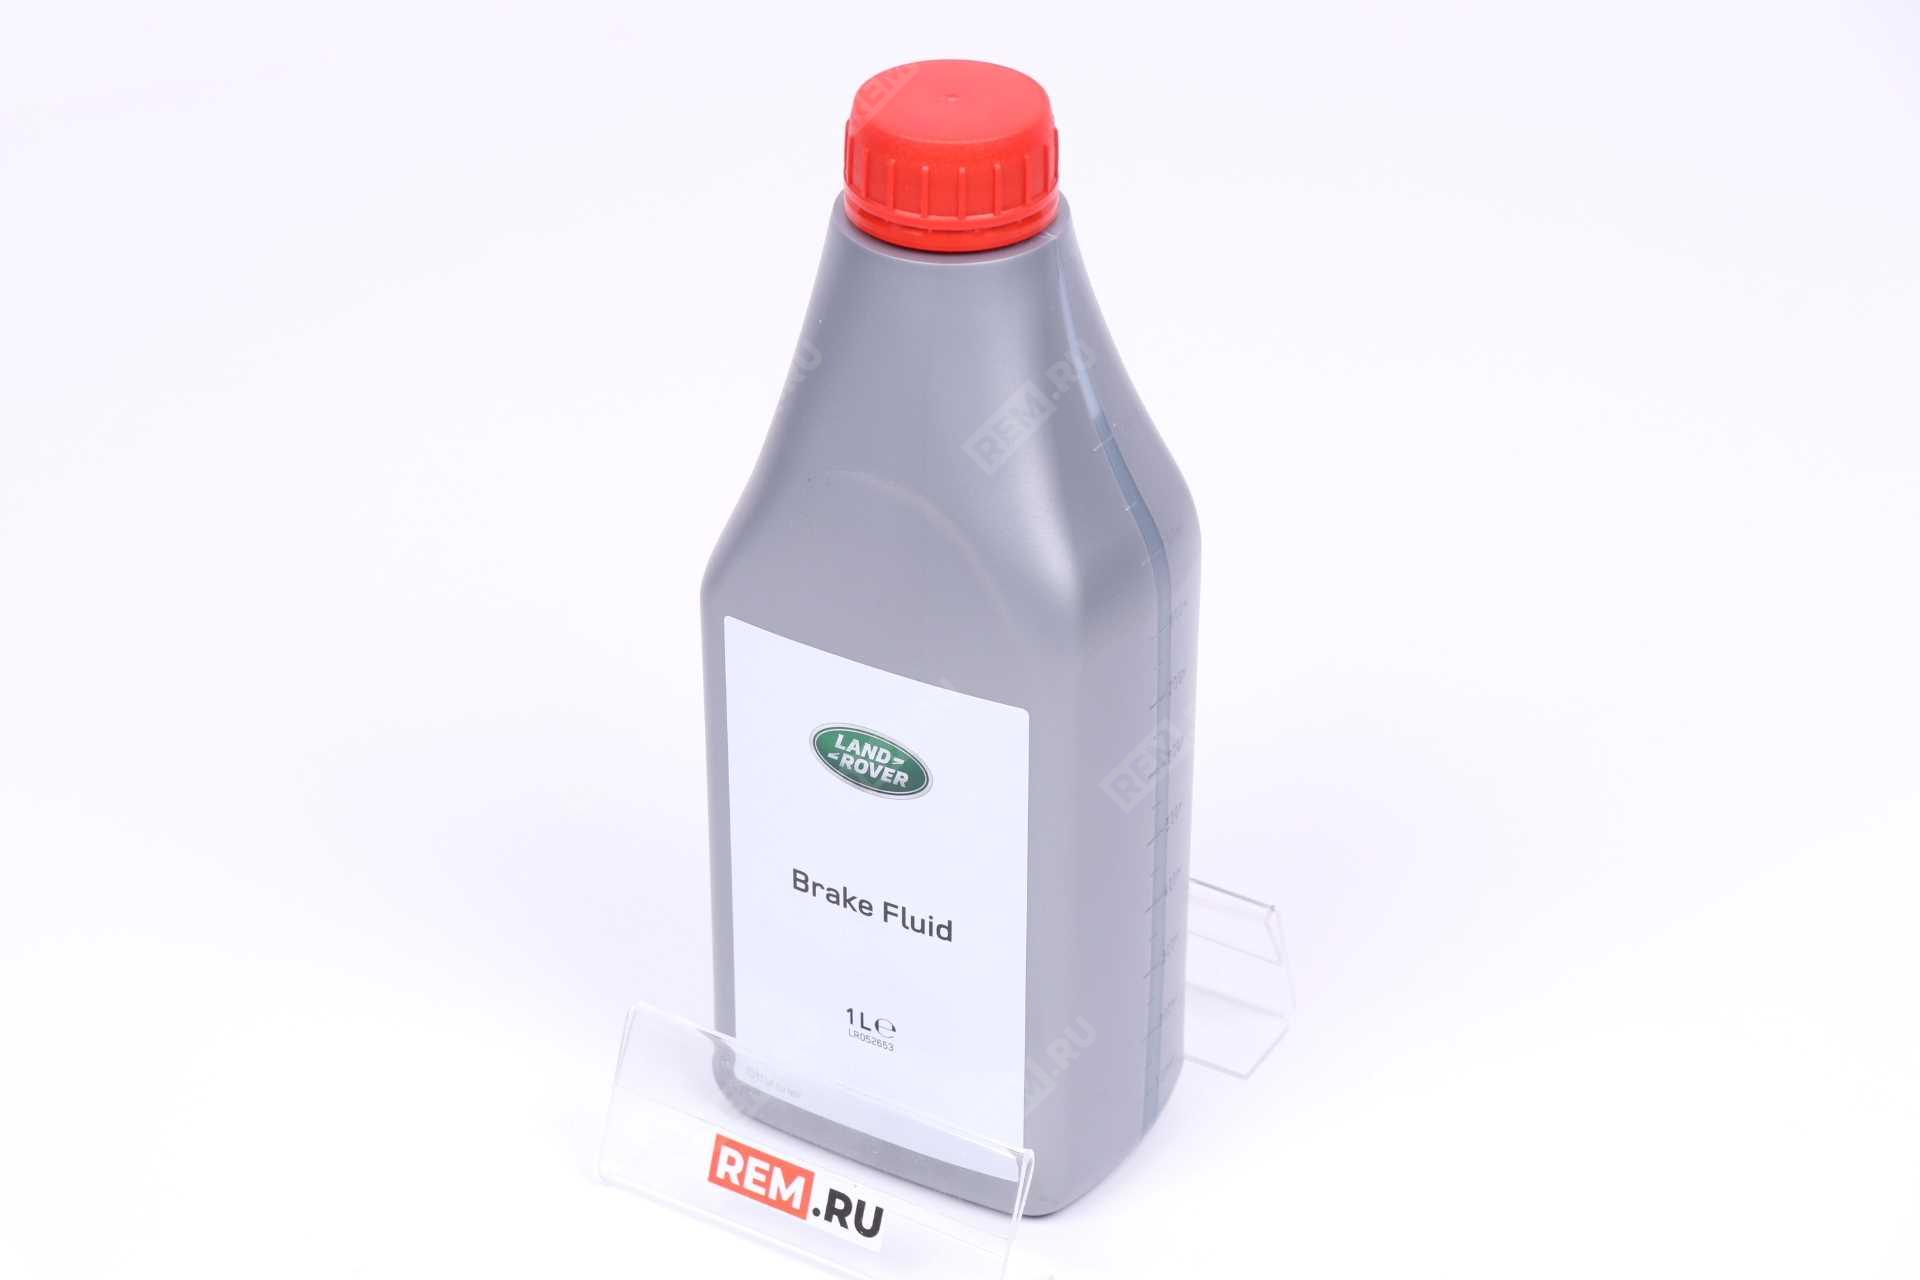  LR052653 жидкость тормозная dot-4, 1л